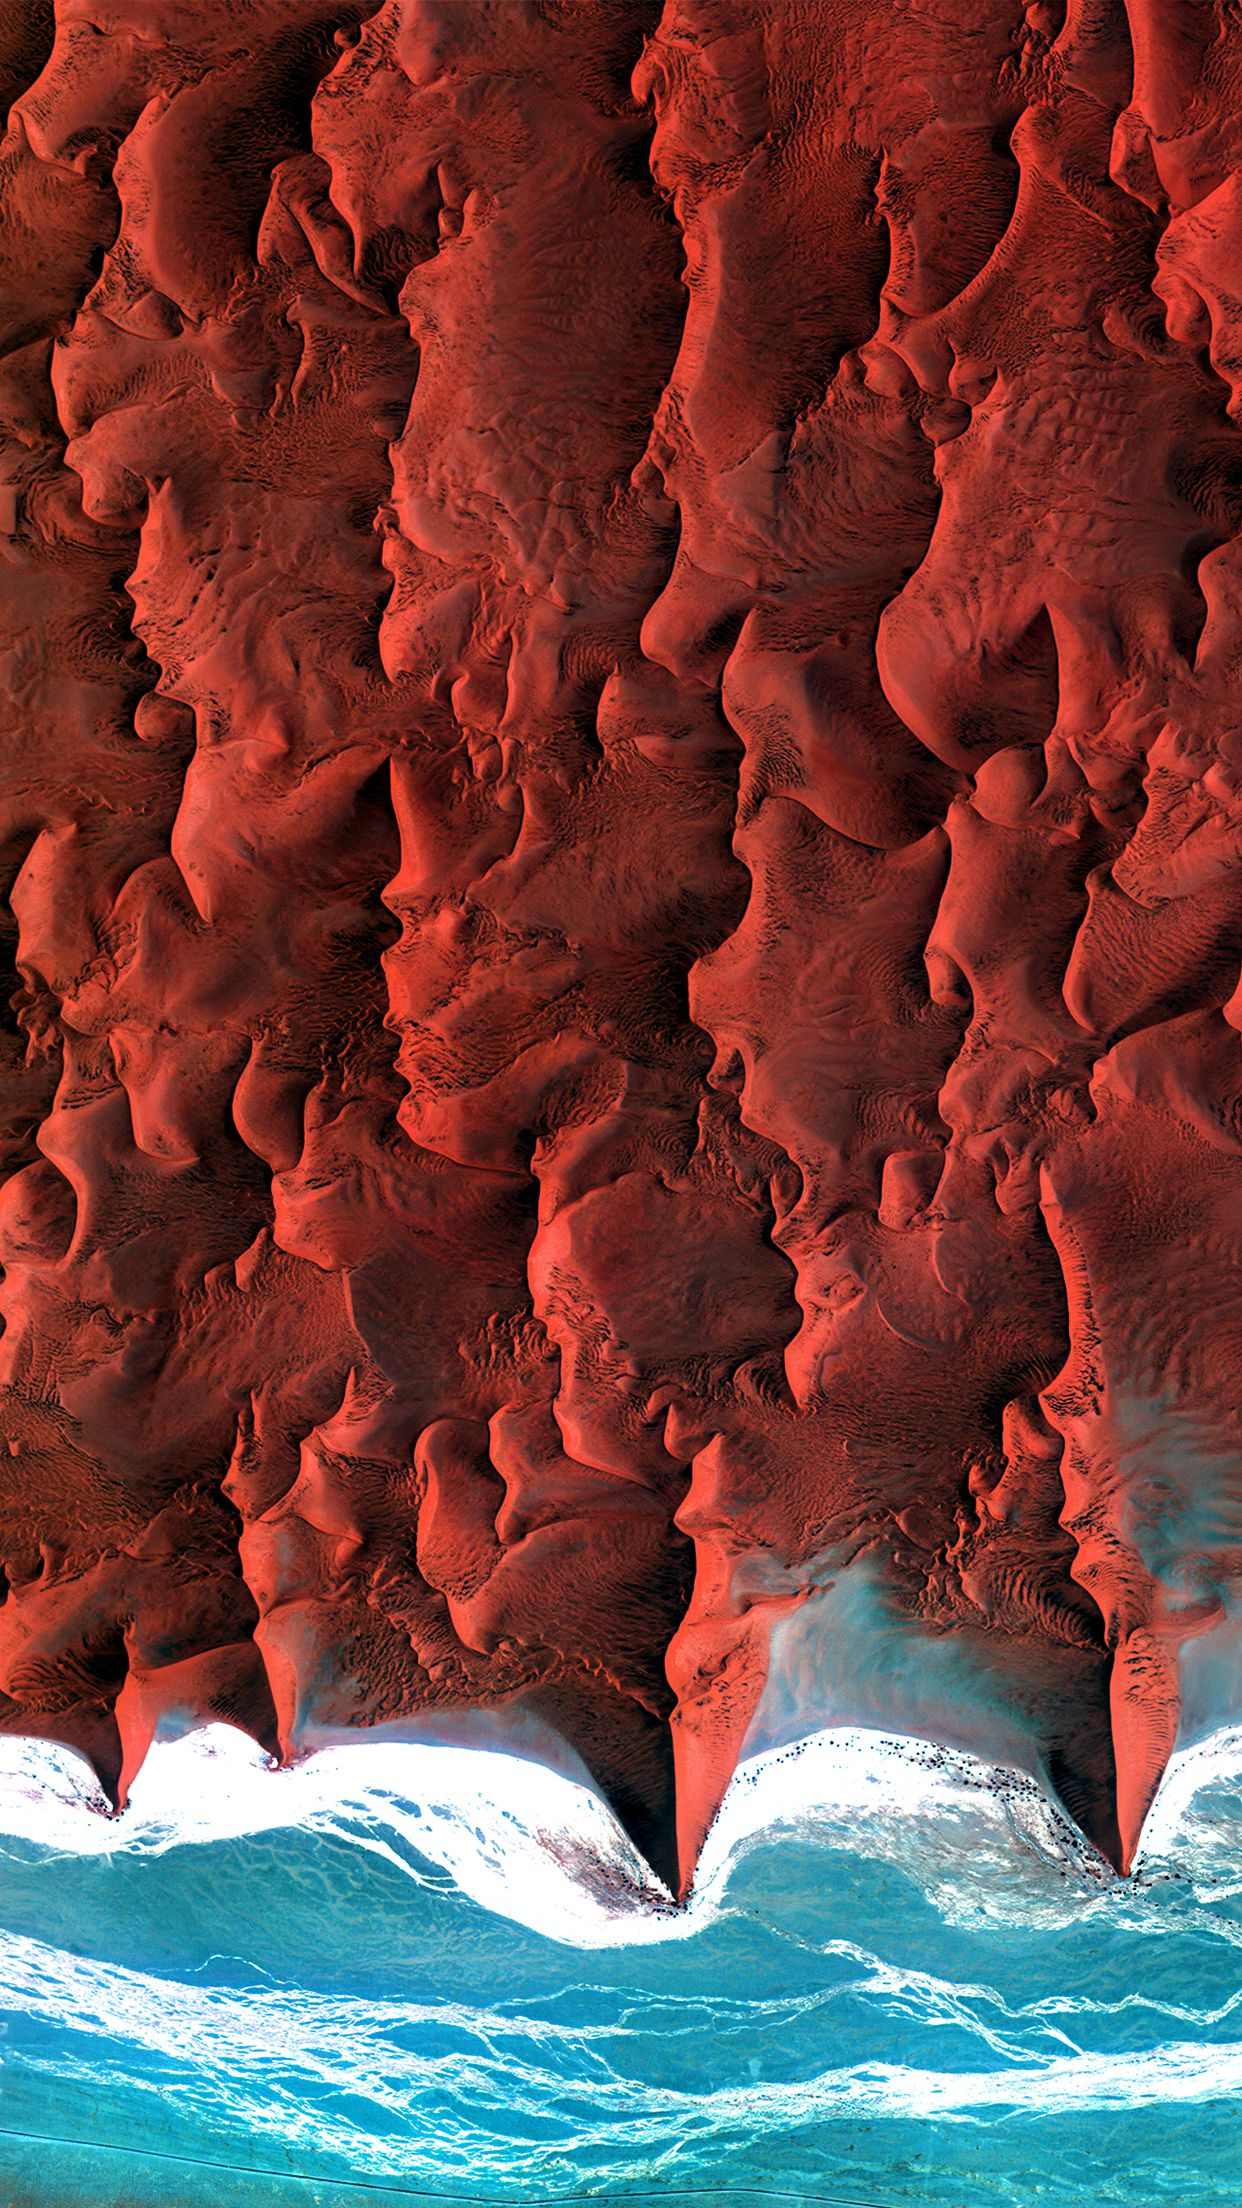 卫星下的海边 如法兰绒般红色土壤山川唯美景色壁纸